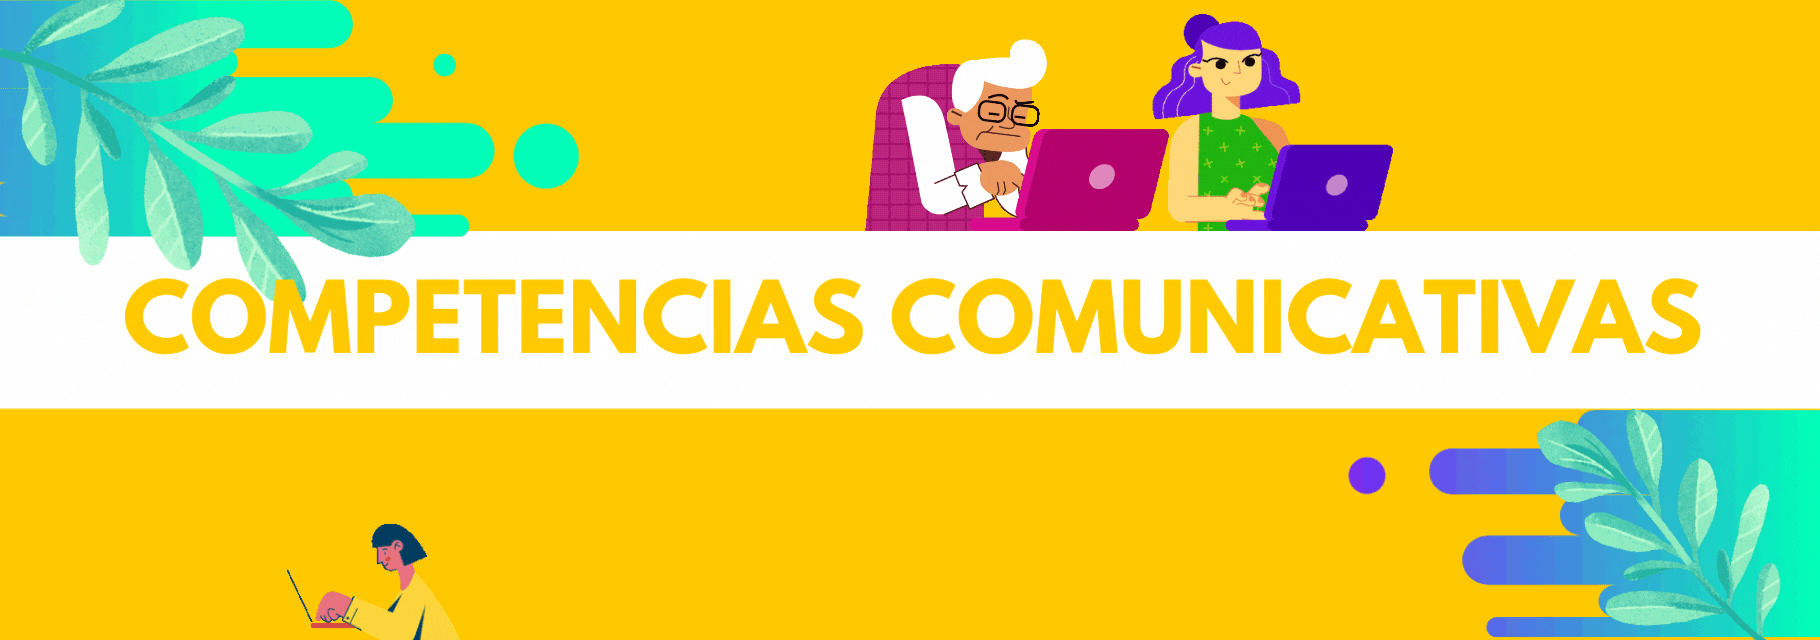 COMPETENCIAS COMUNICATIVAS - Grupo 4